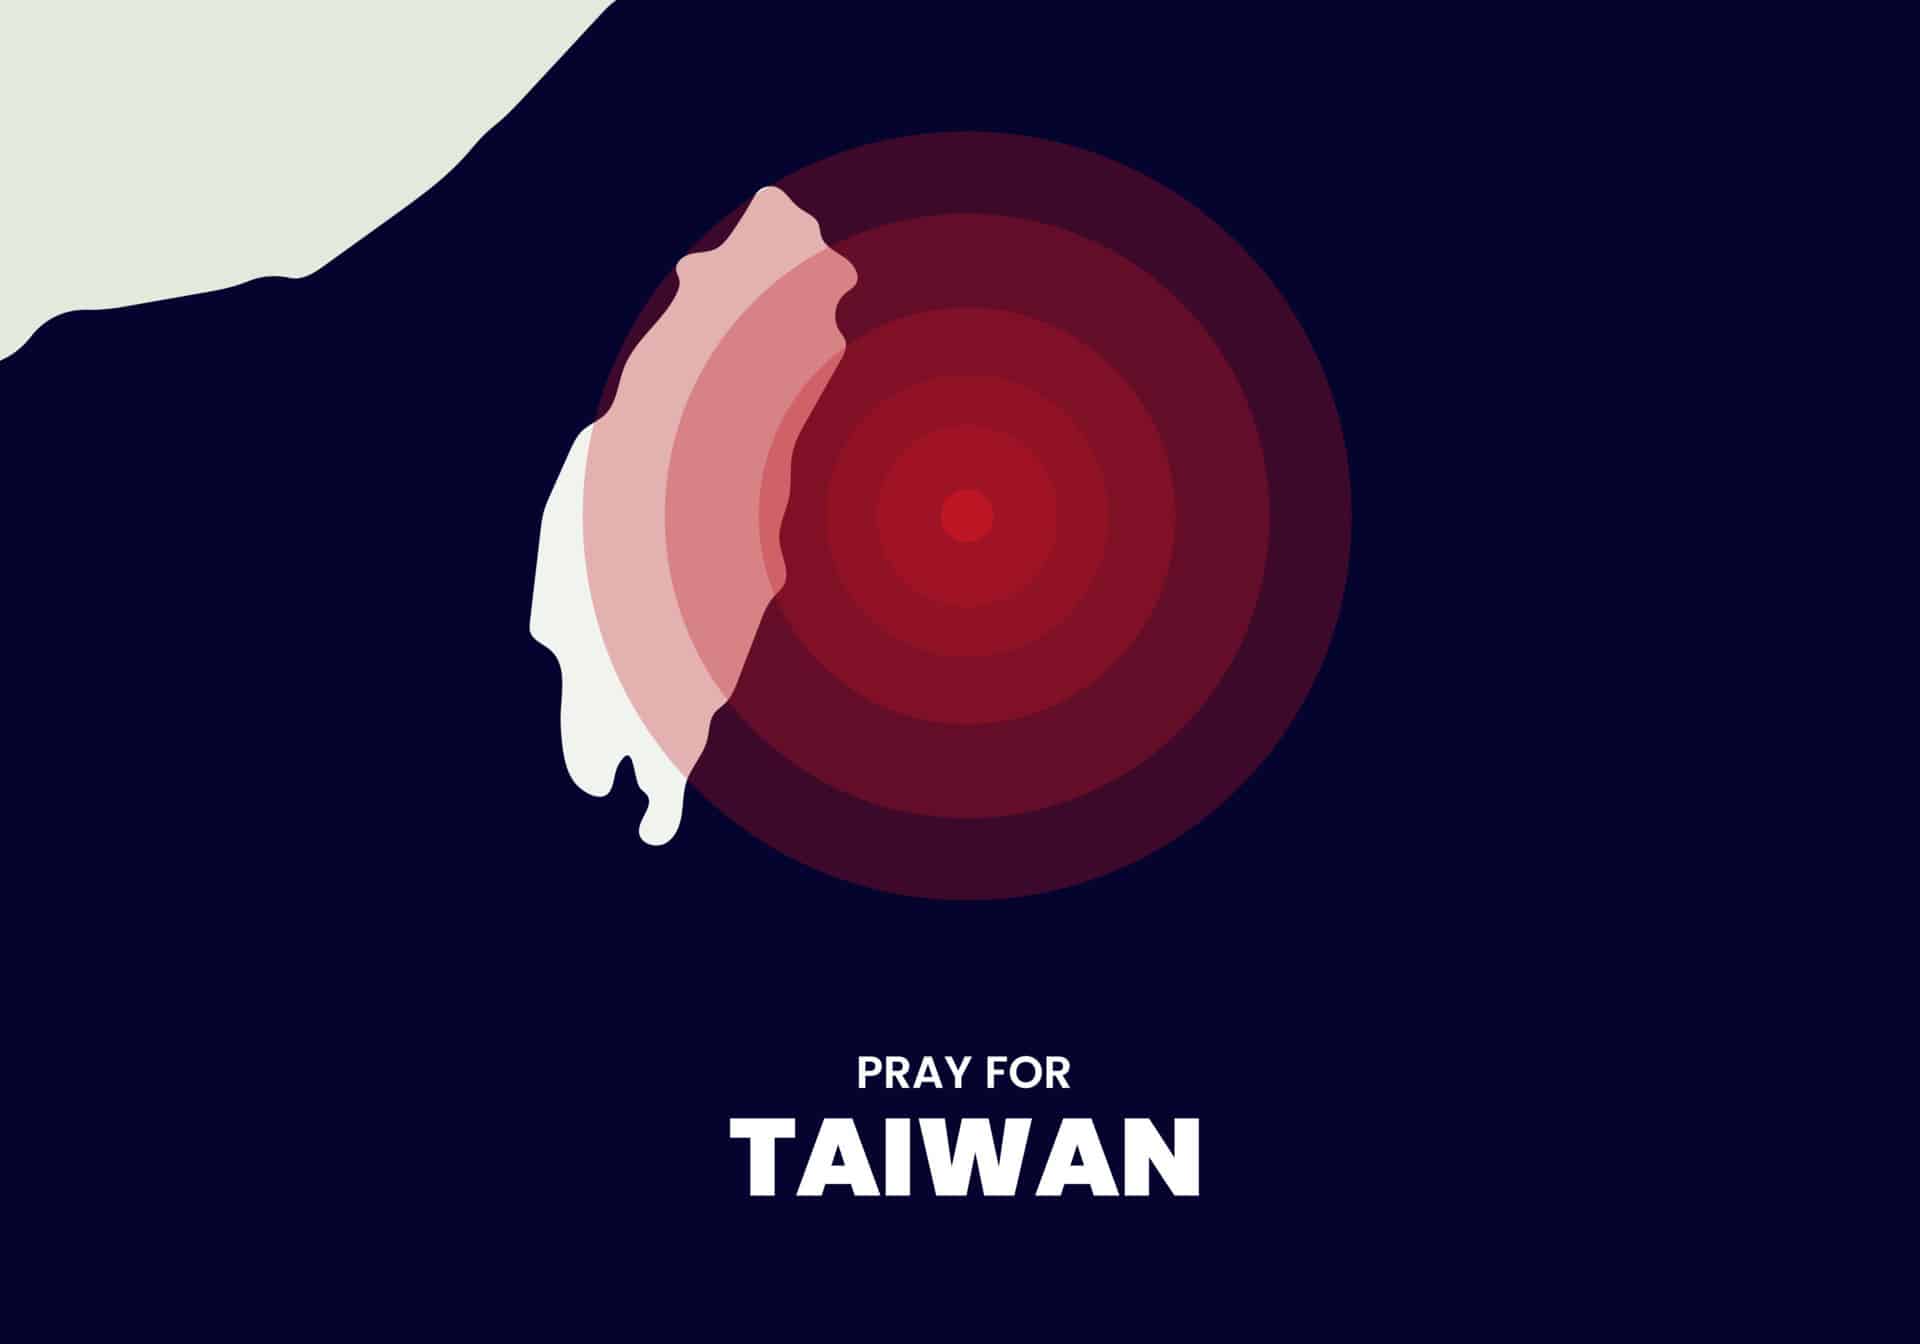 молитесь за тайваньскую иллюстрацию и послания поддержки жертвам землетрясения в Тайване